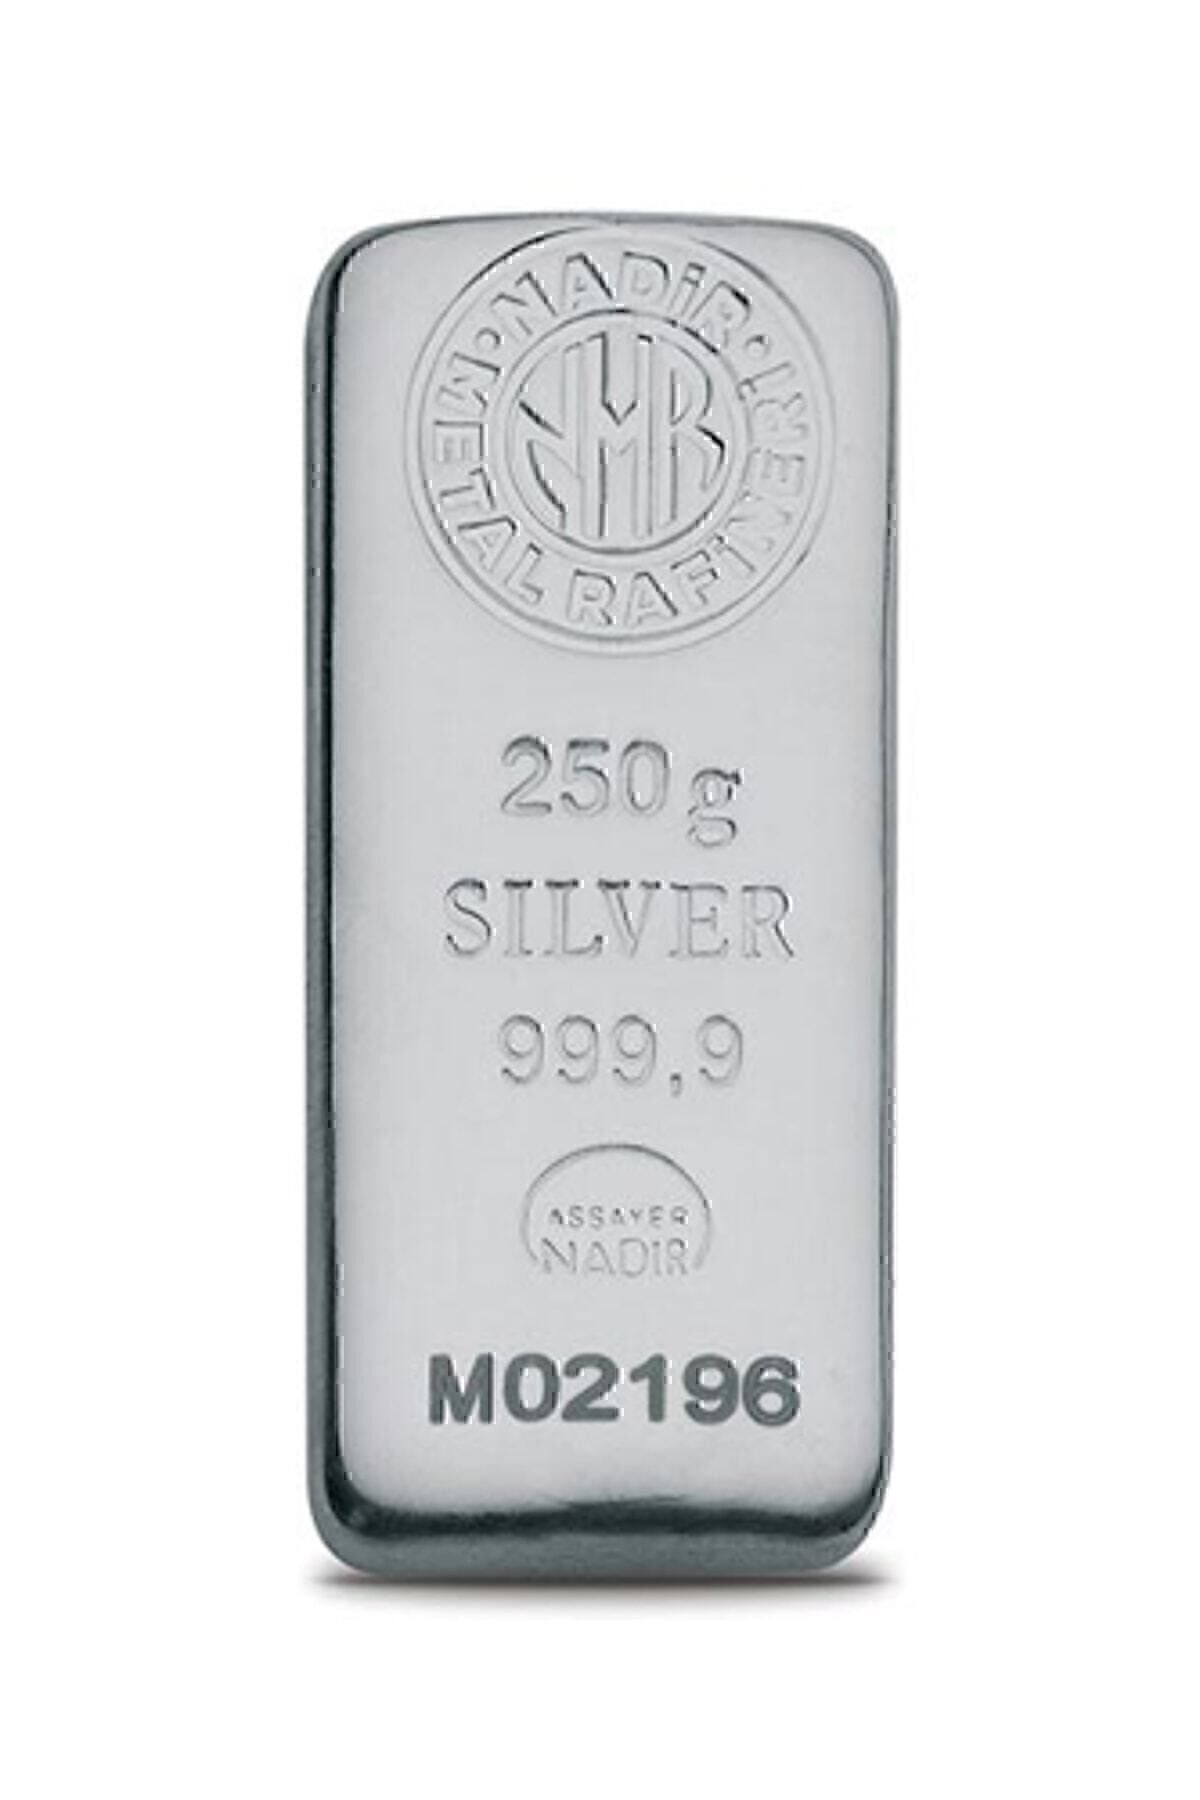 Nadir Gold Uluslararası Geçerli Faturalı 250 gr 999,9 Külçe Gümüş